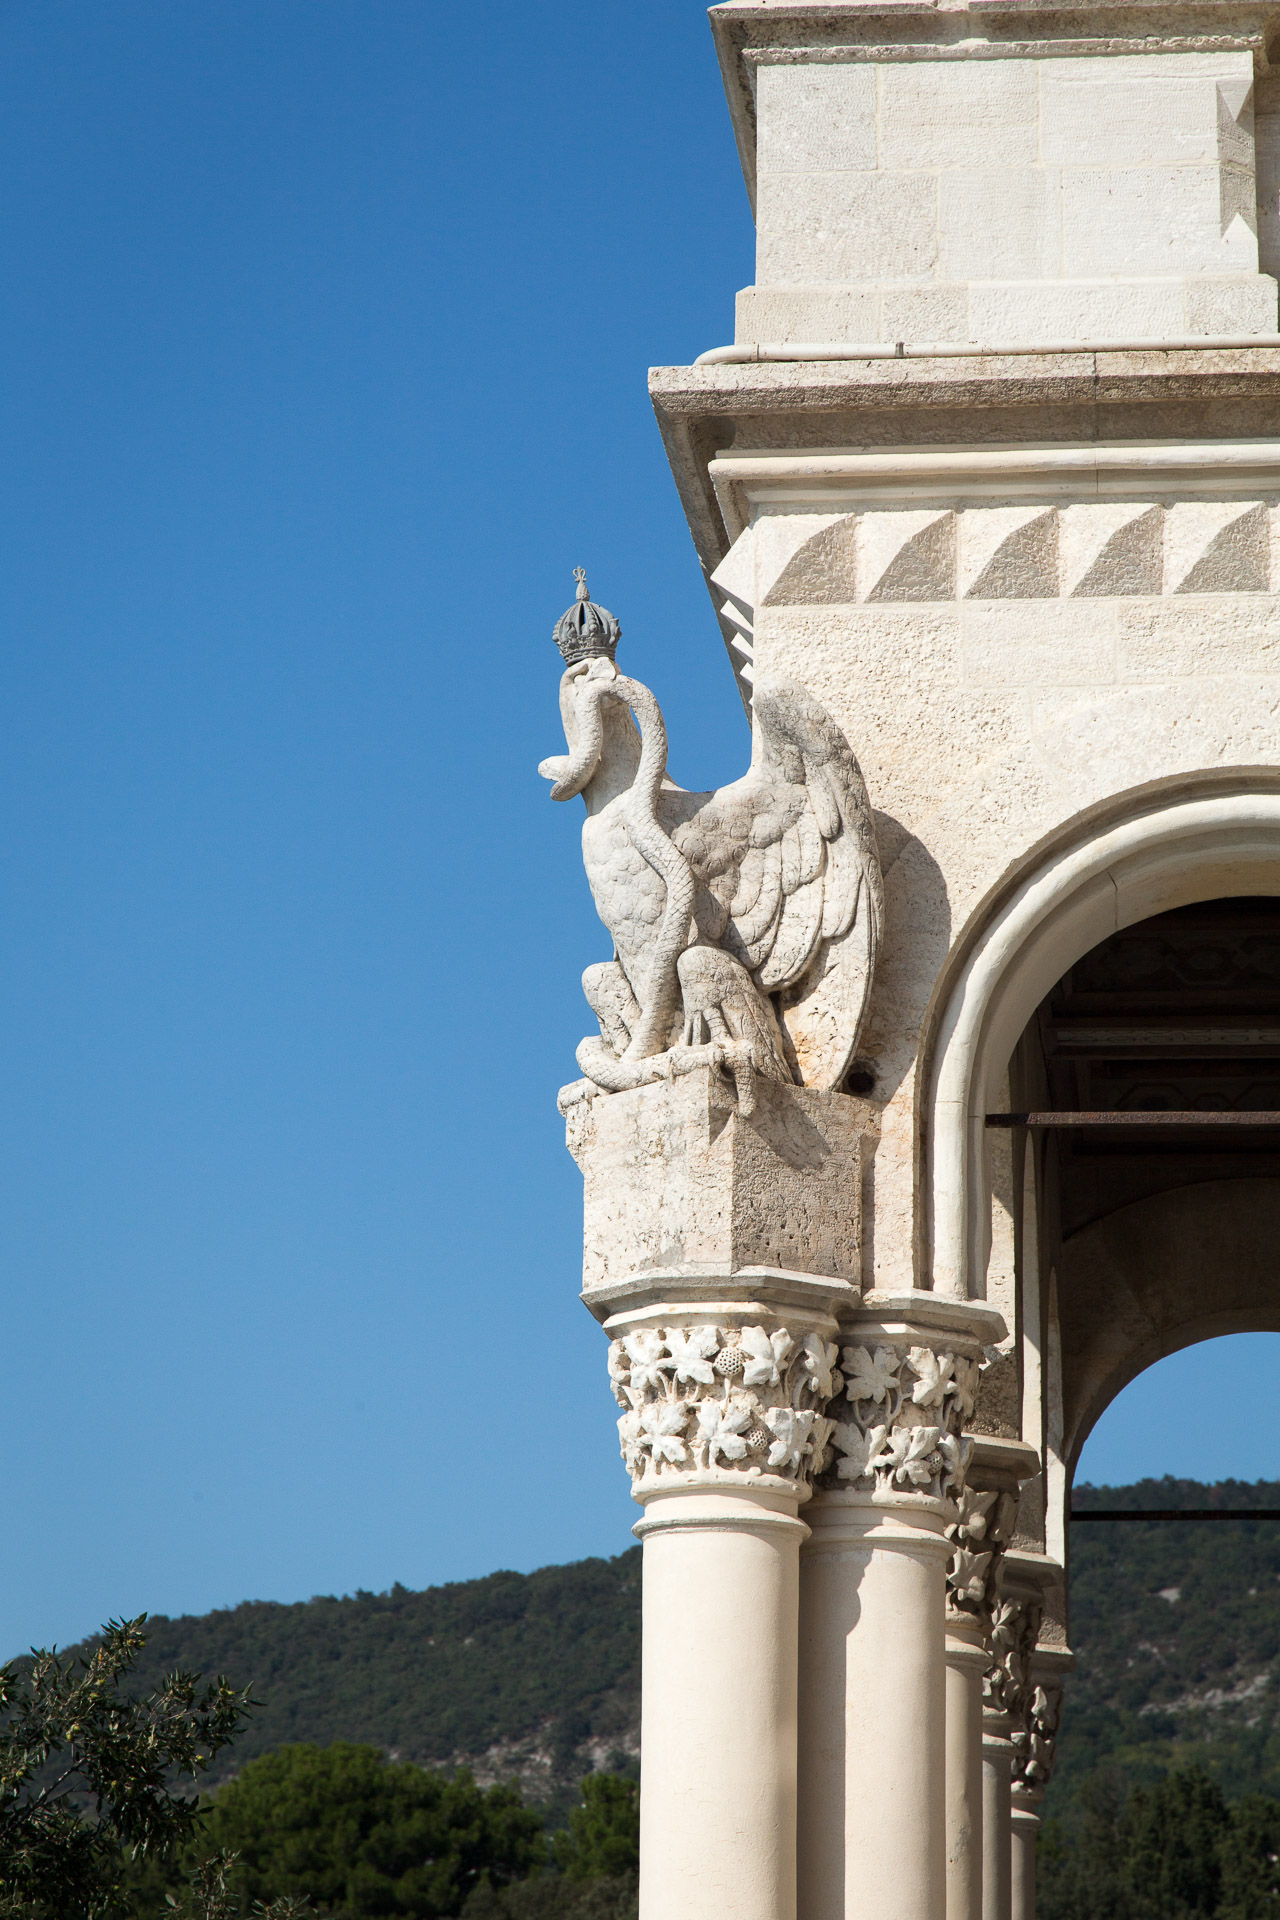 Adler mit Schlange an der Fassade von Schloss Miramare